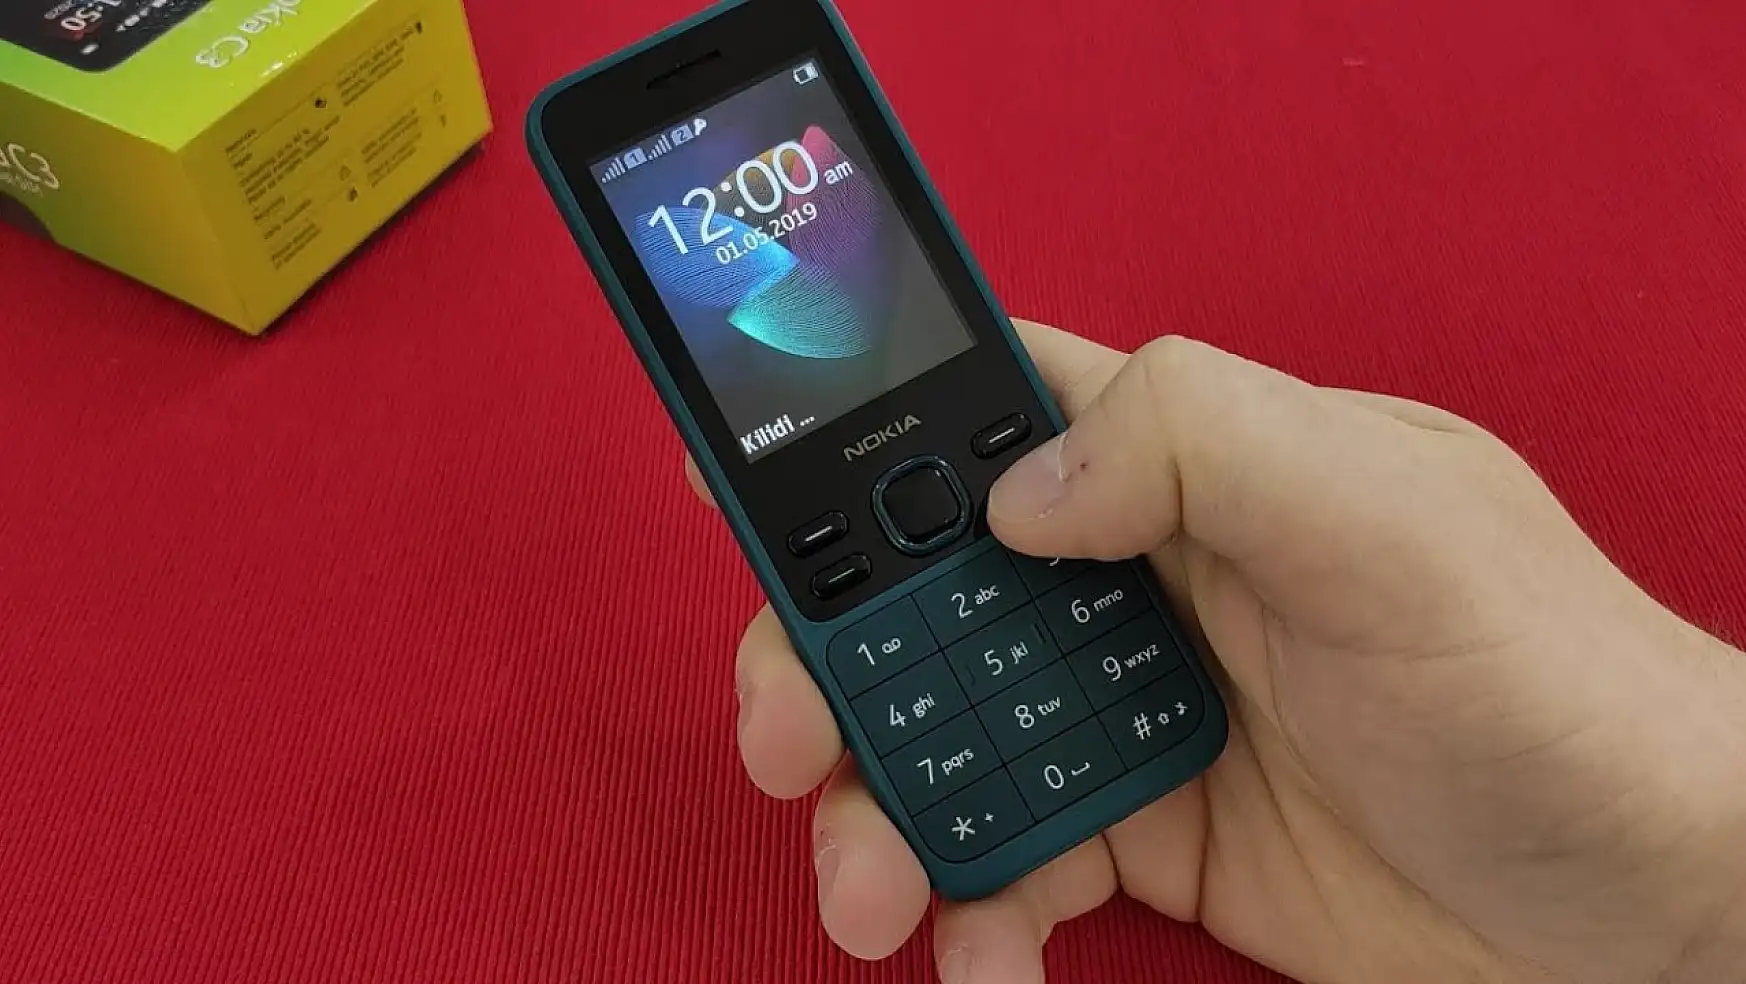 Şarjı 1 ay giden telefon ilk kez tanıtıldı. Yılların efsanesi Nokia 150 ve 130 ile geri döndü